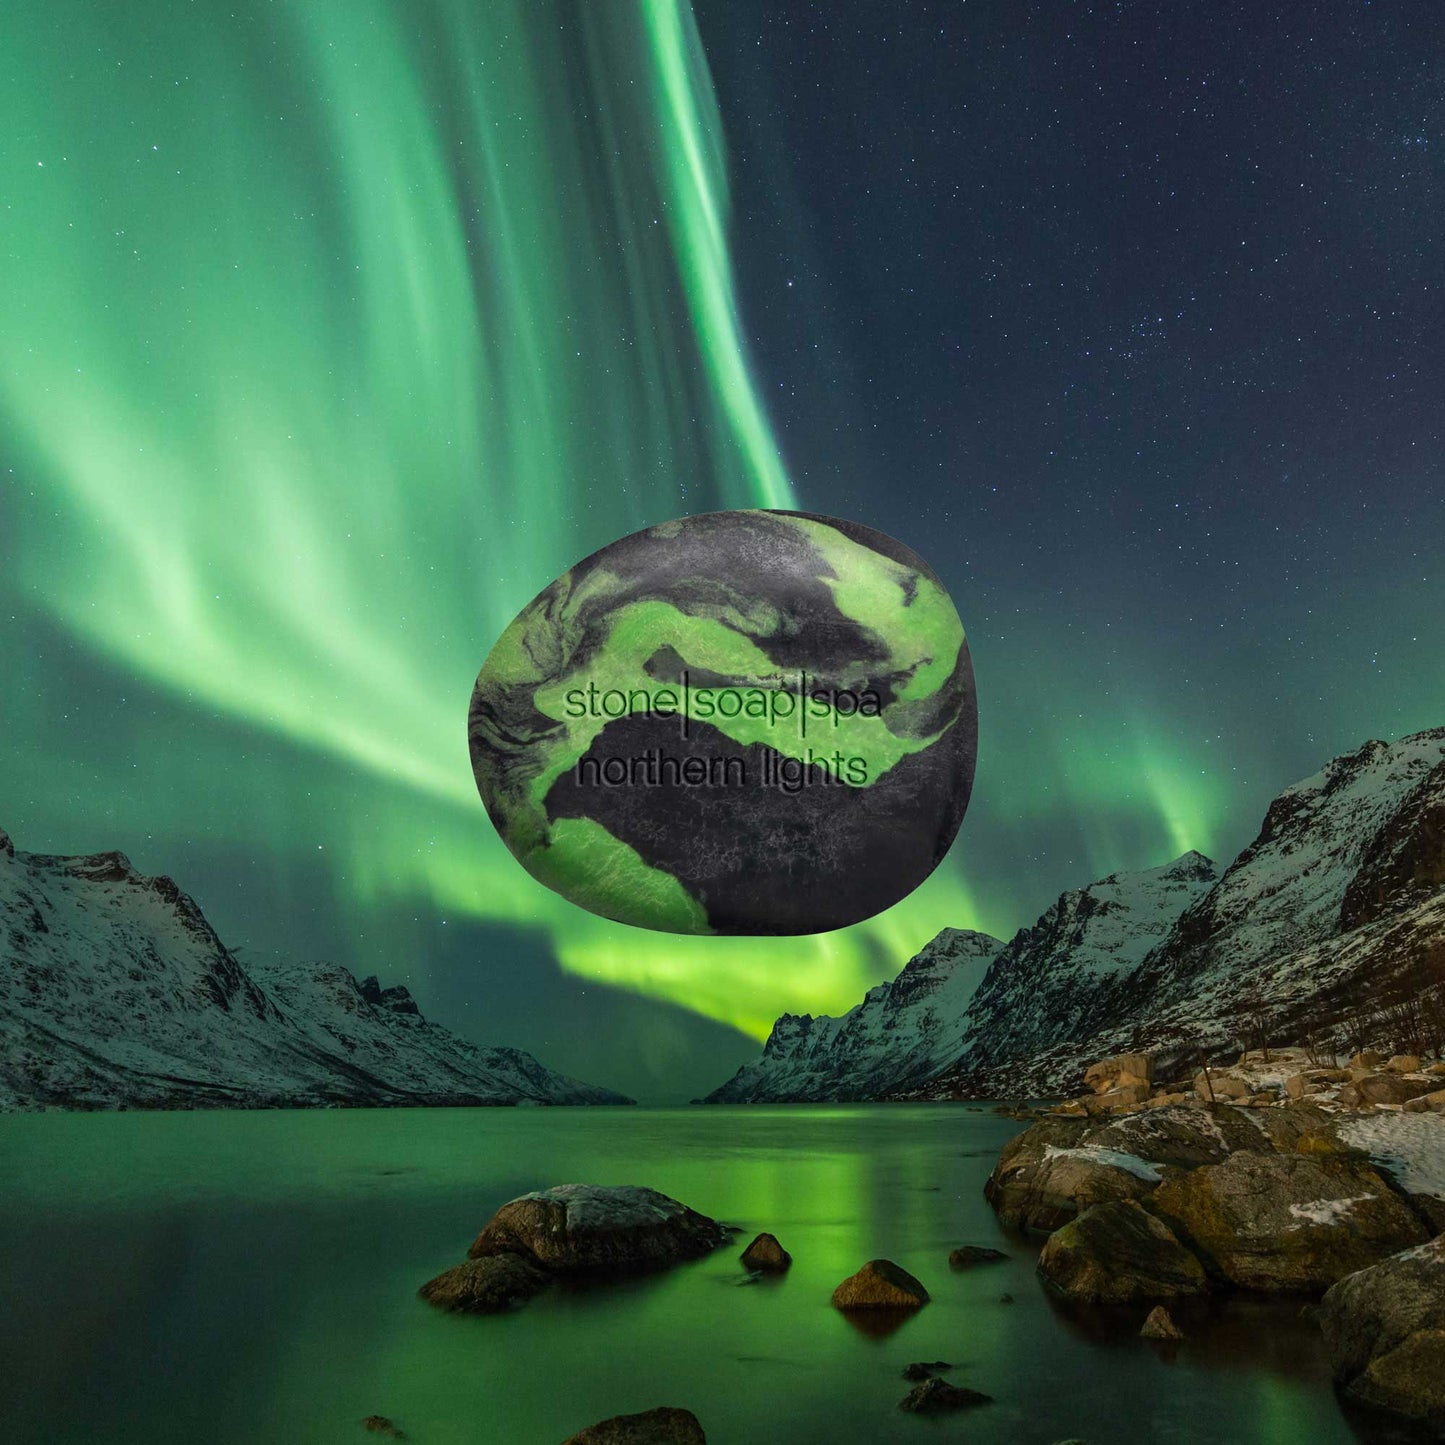 Stone soap sápa | Norðurljós græn